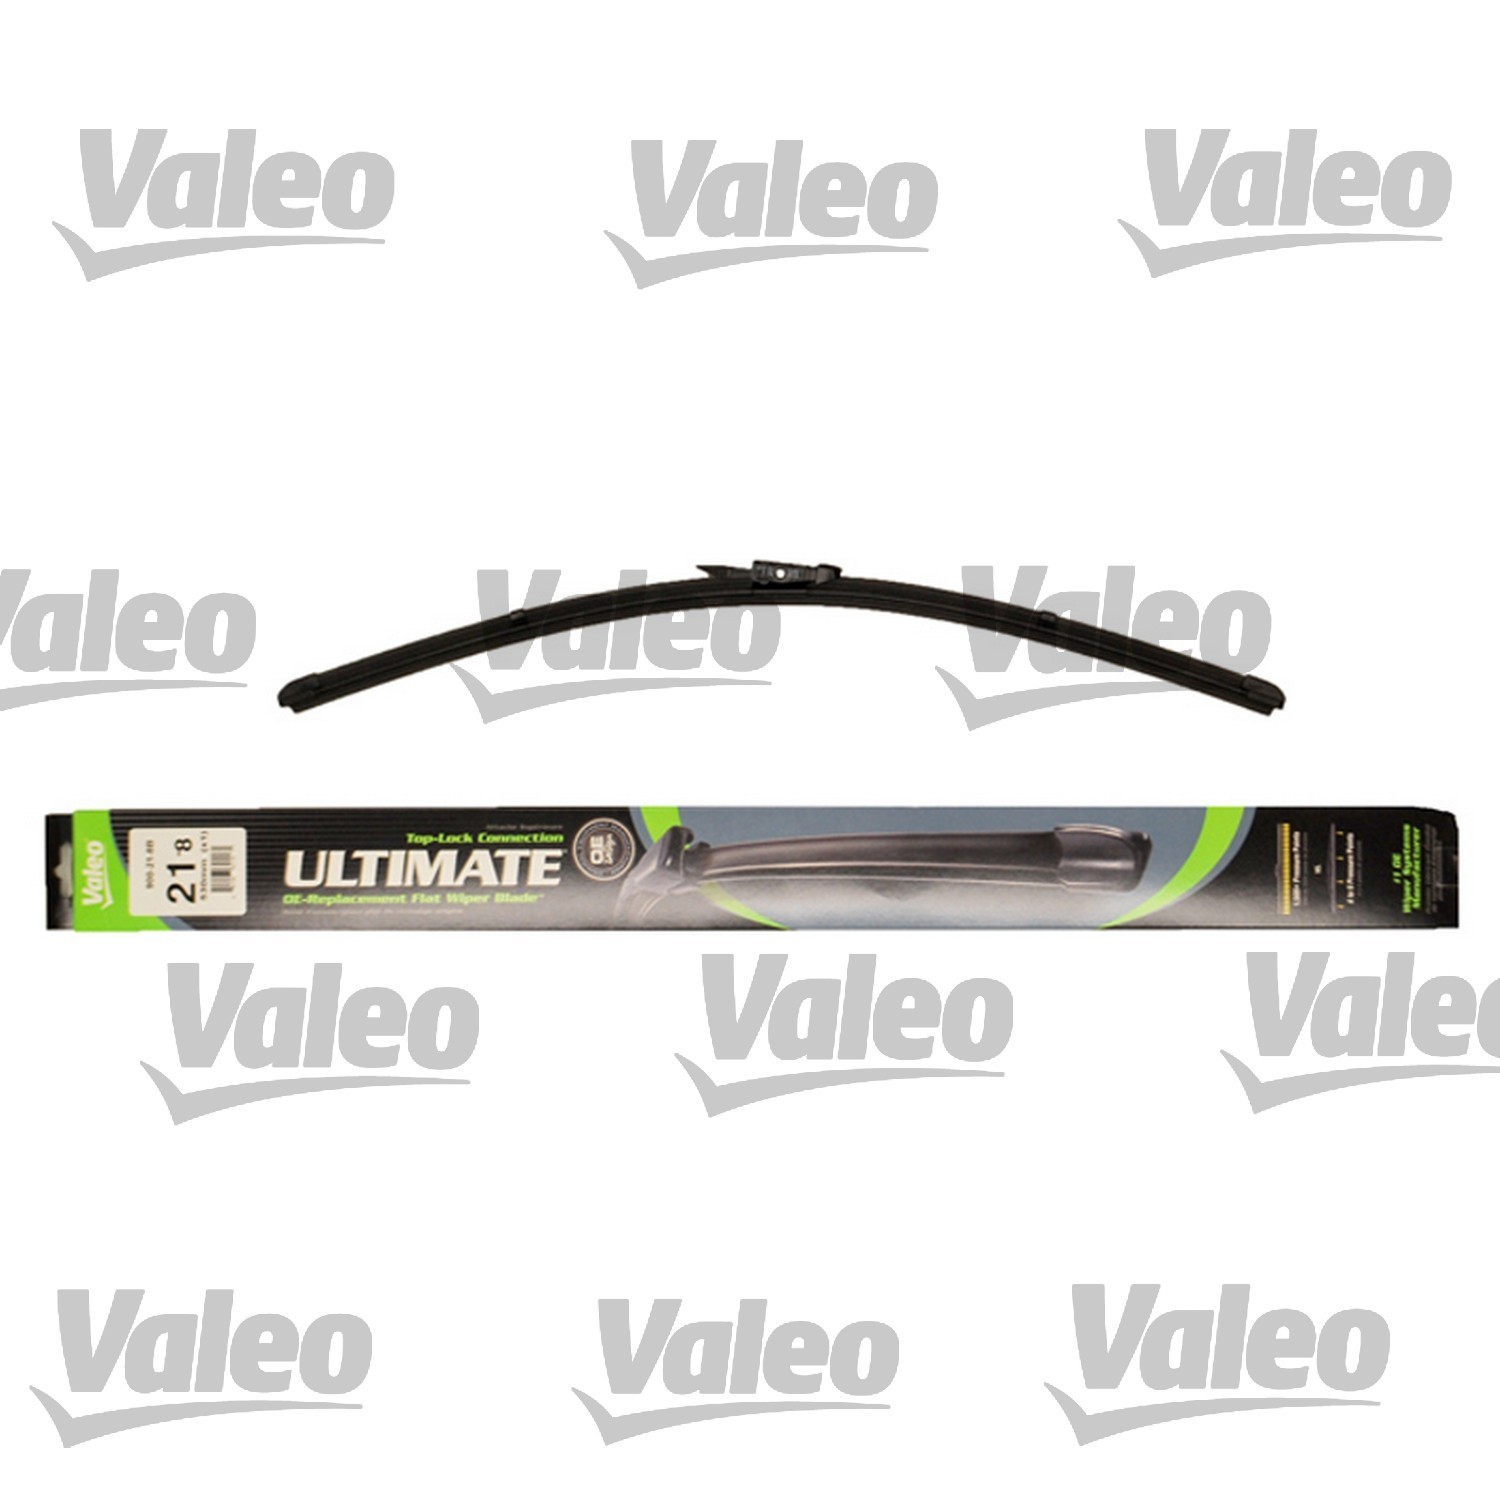 VALEO - Ultimate Wiper Blade Refill - VEO 900-21-8B